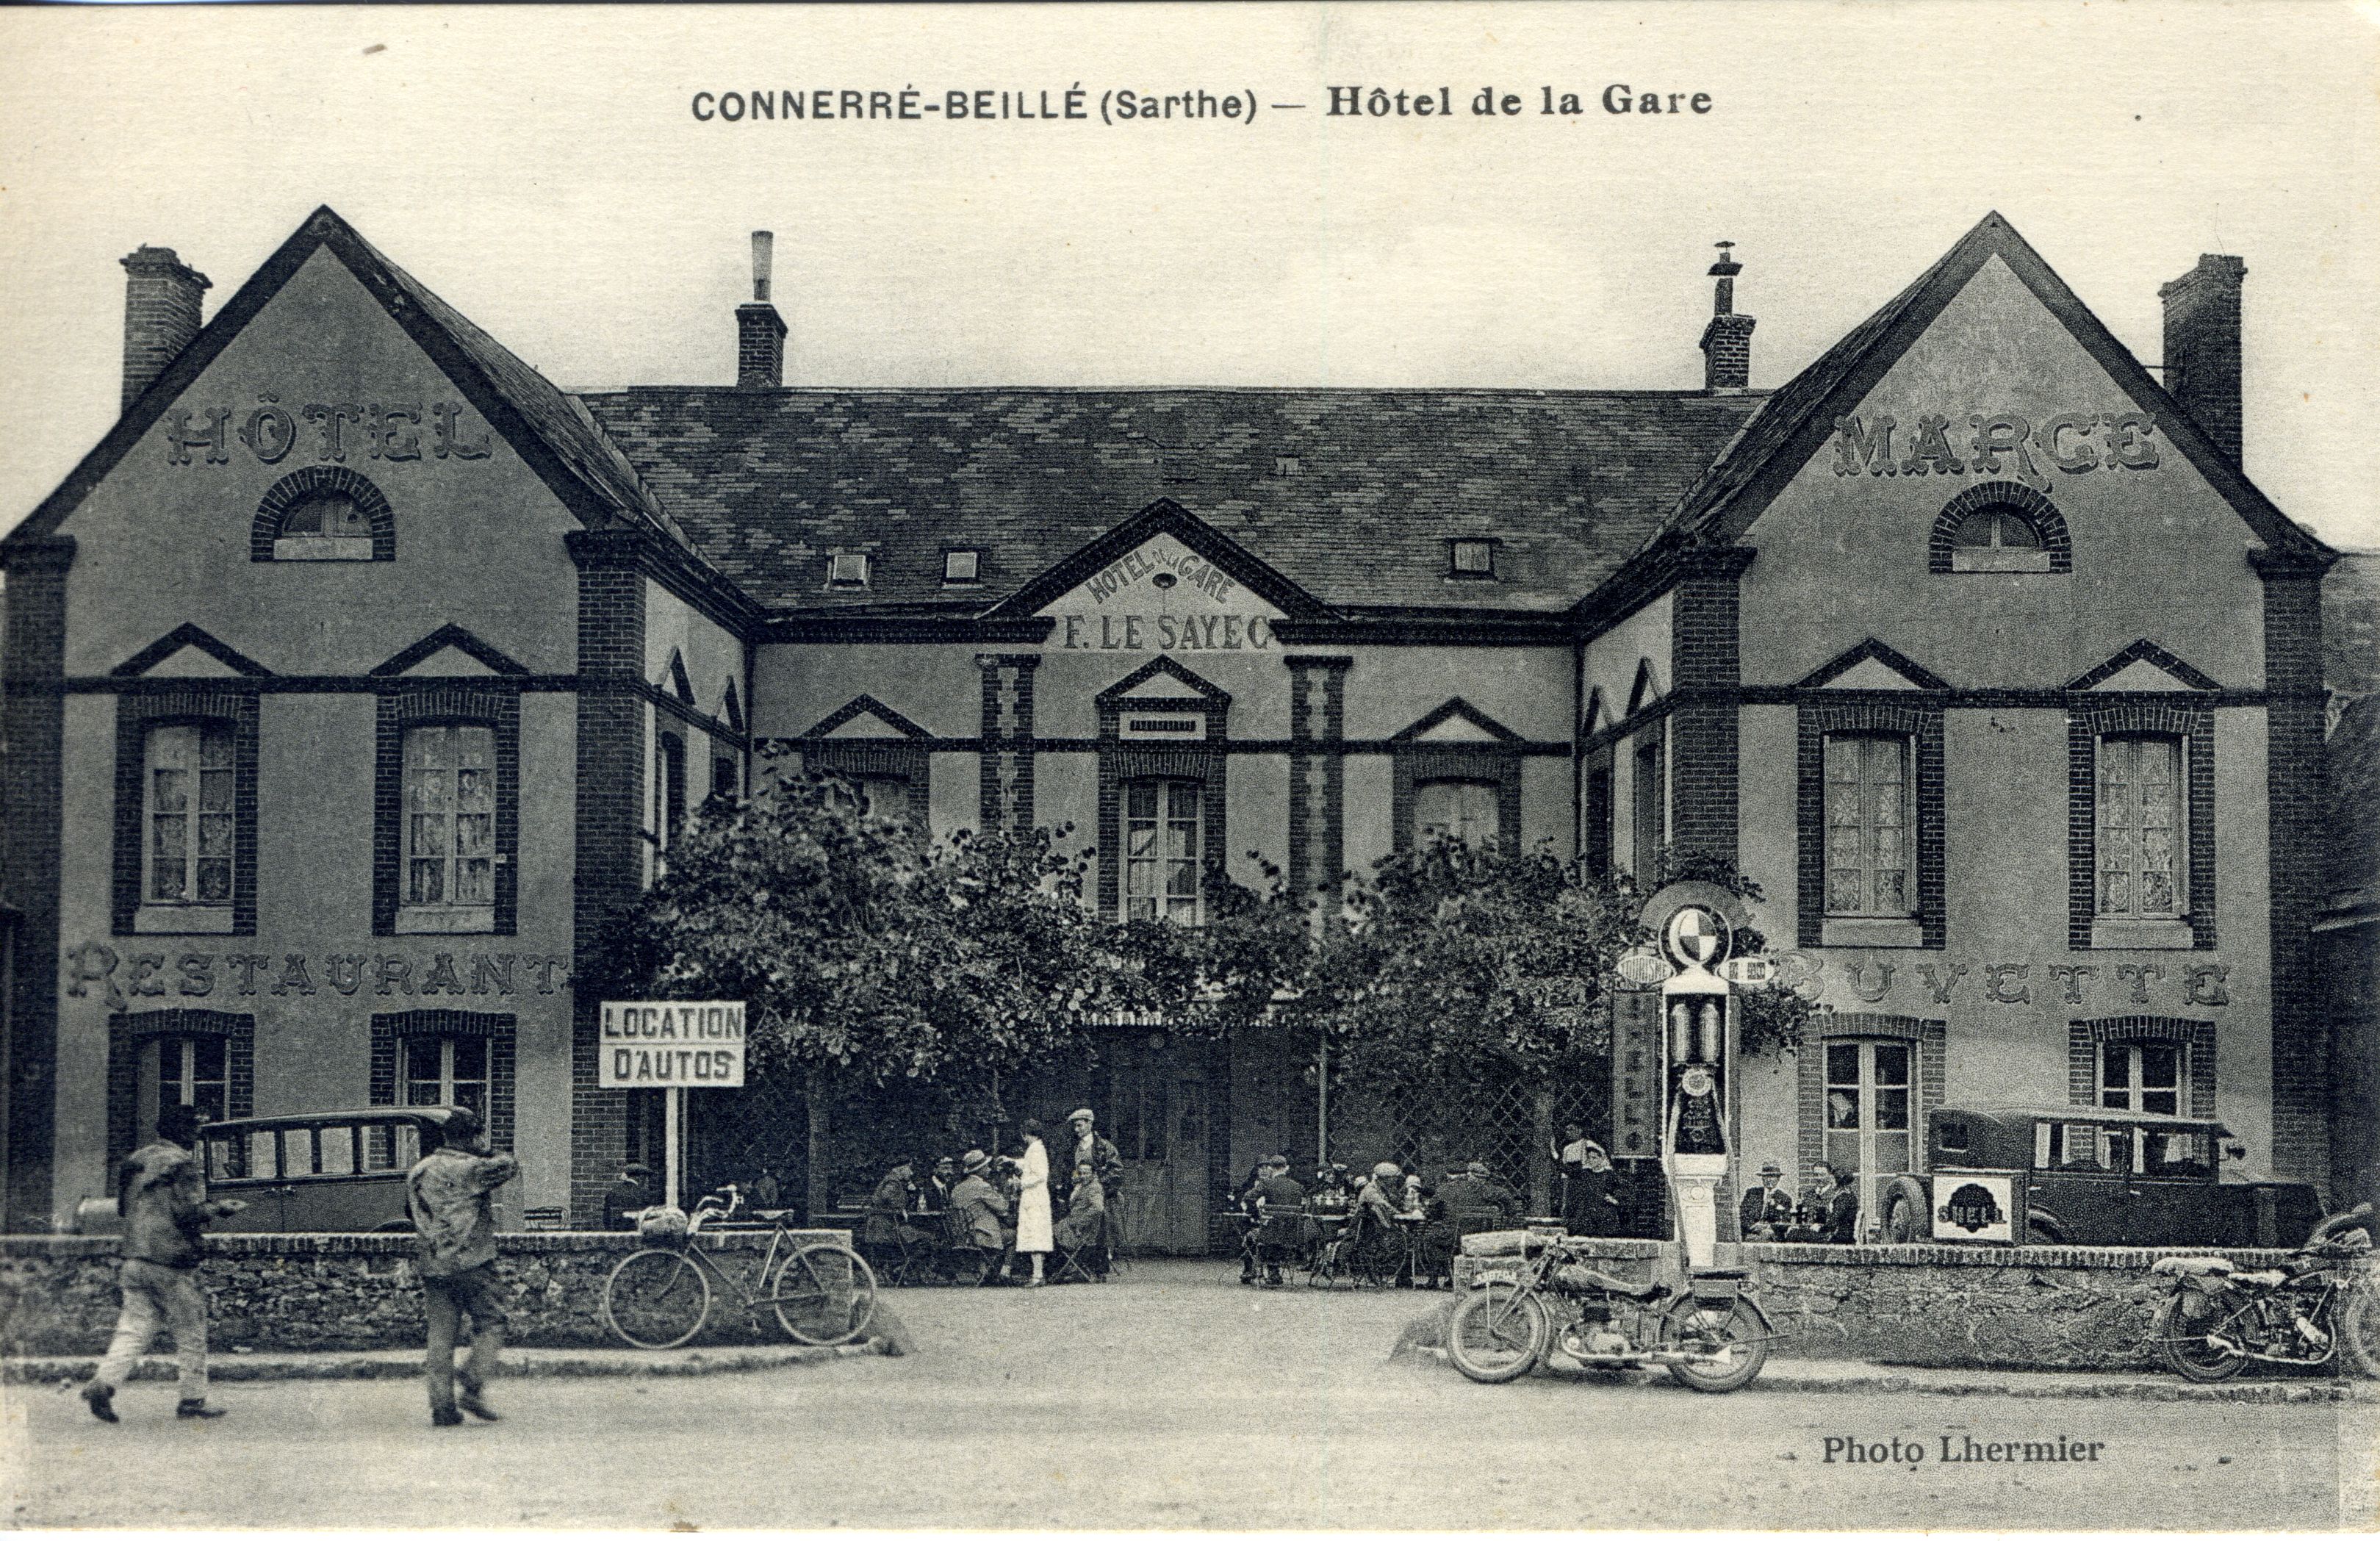 1920, Connerré-Beillé, Hotel de la gare